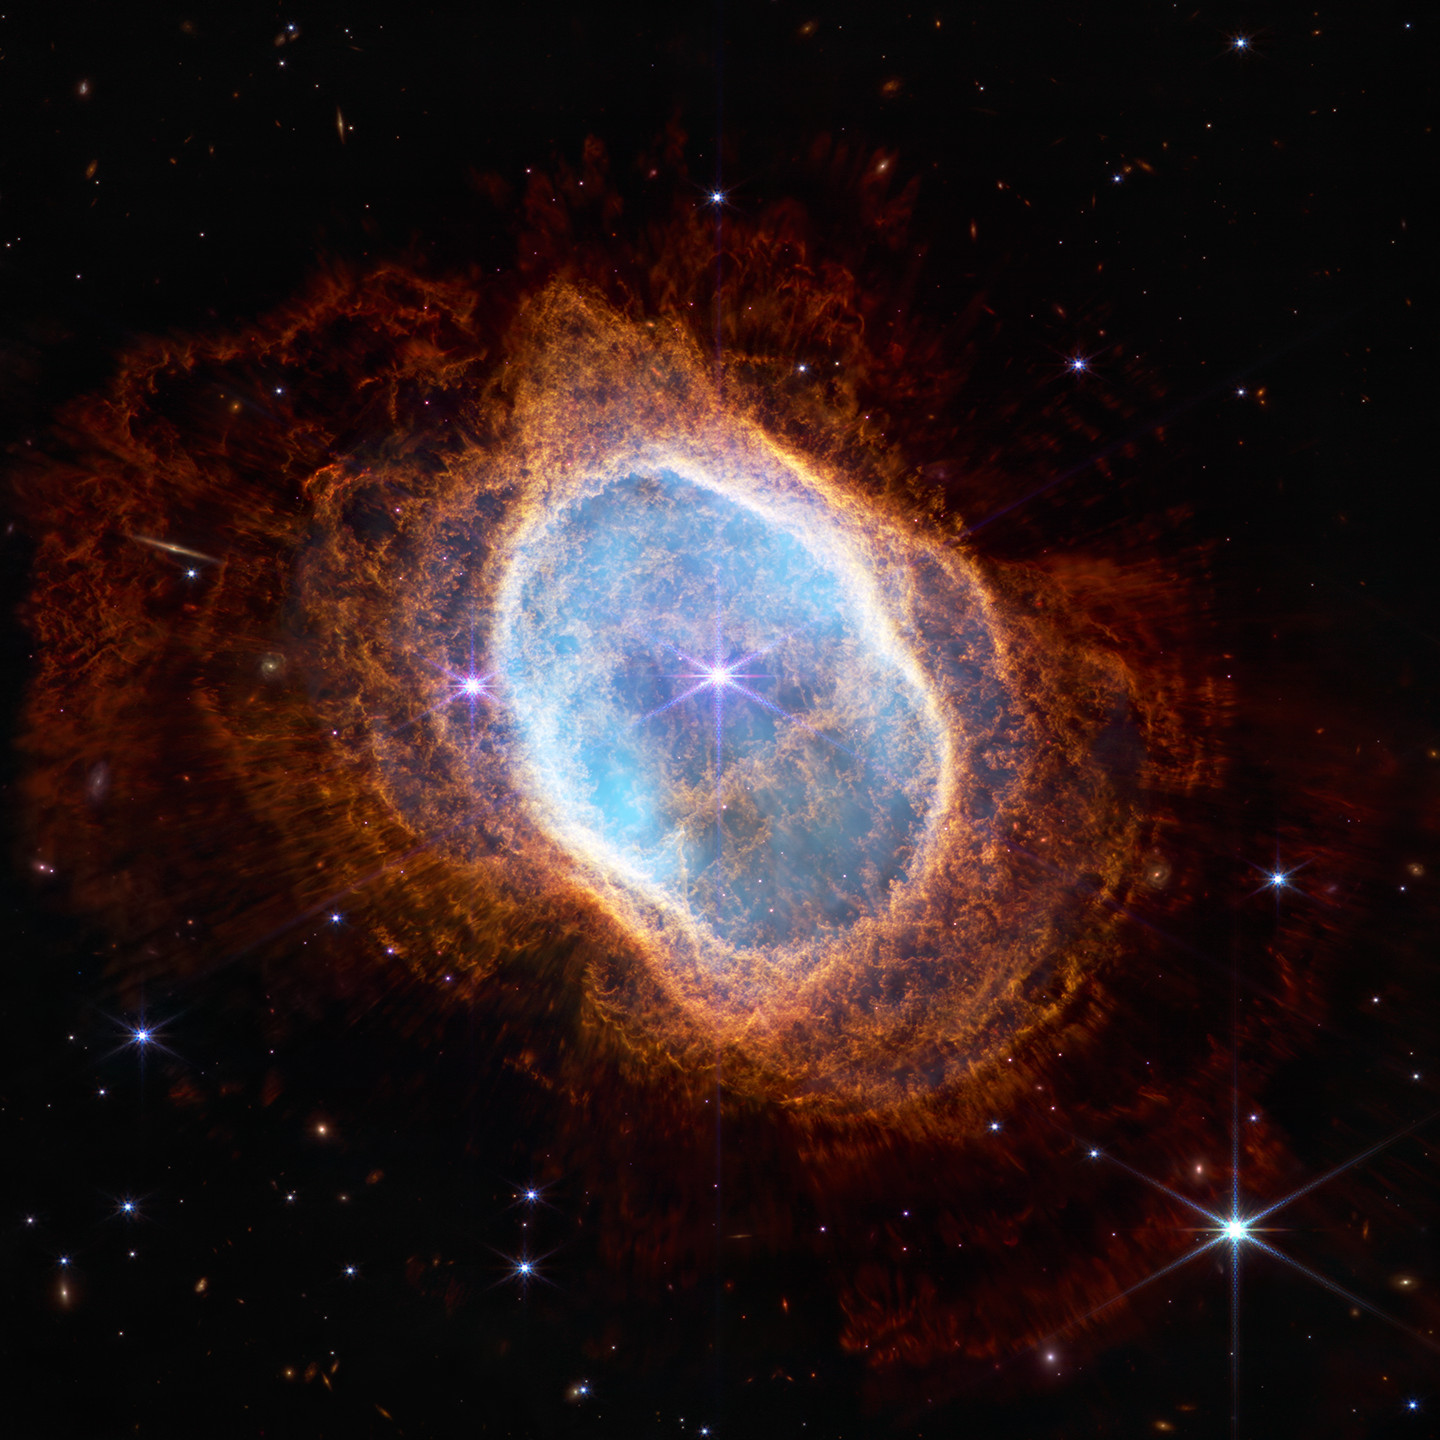 Southern Ring Nebula